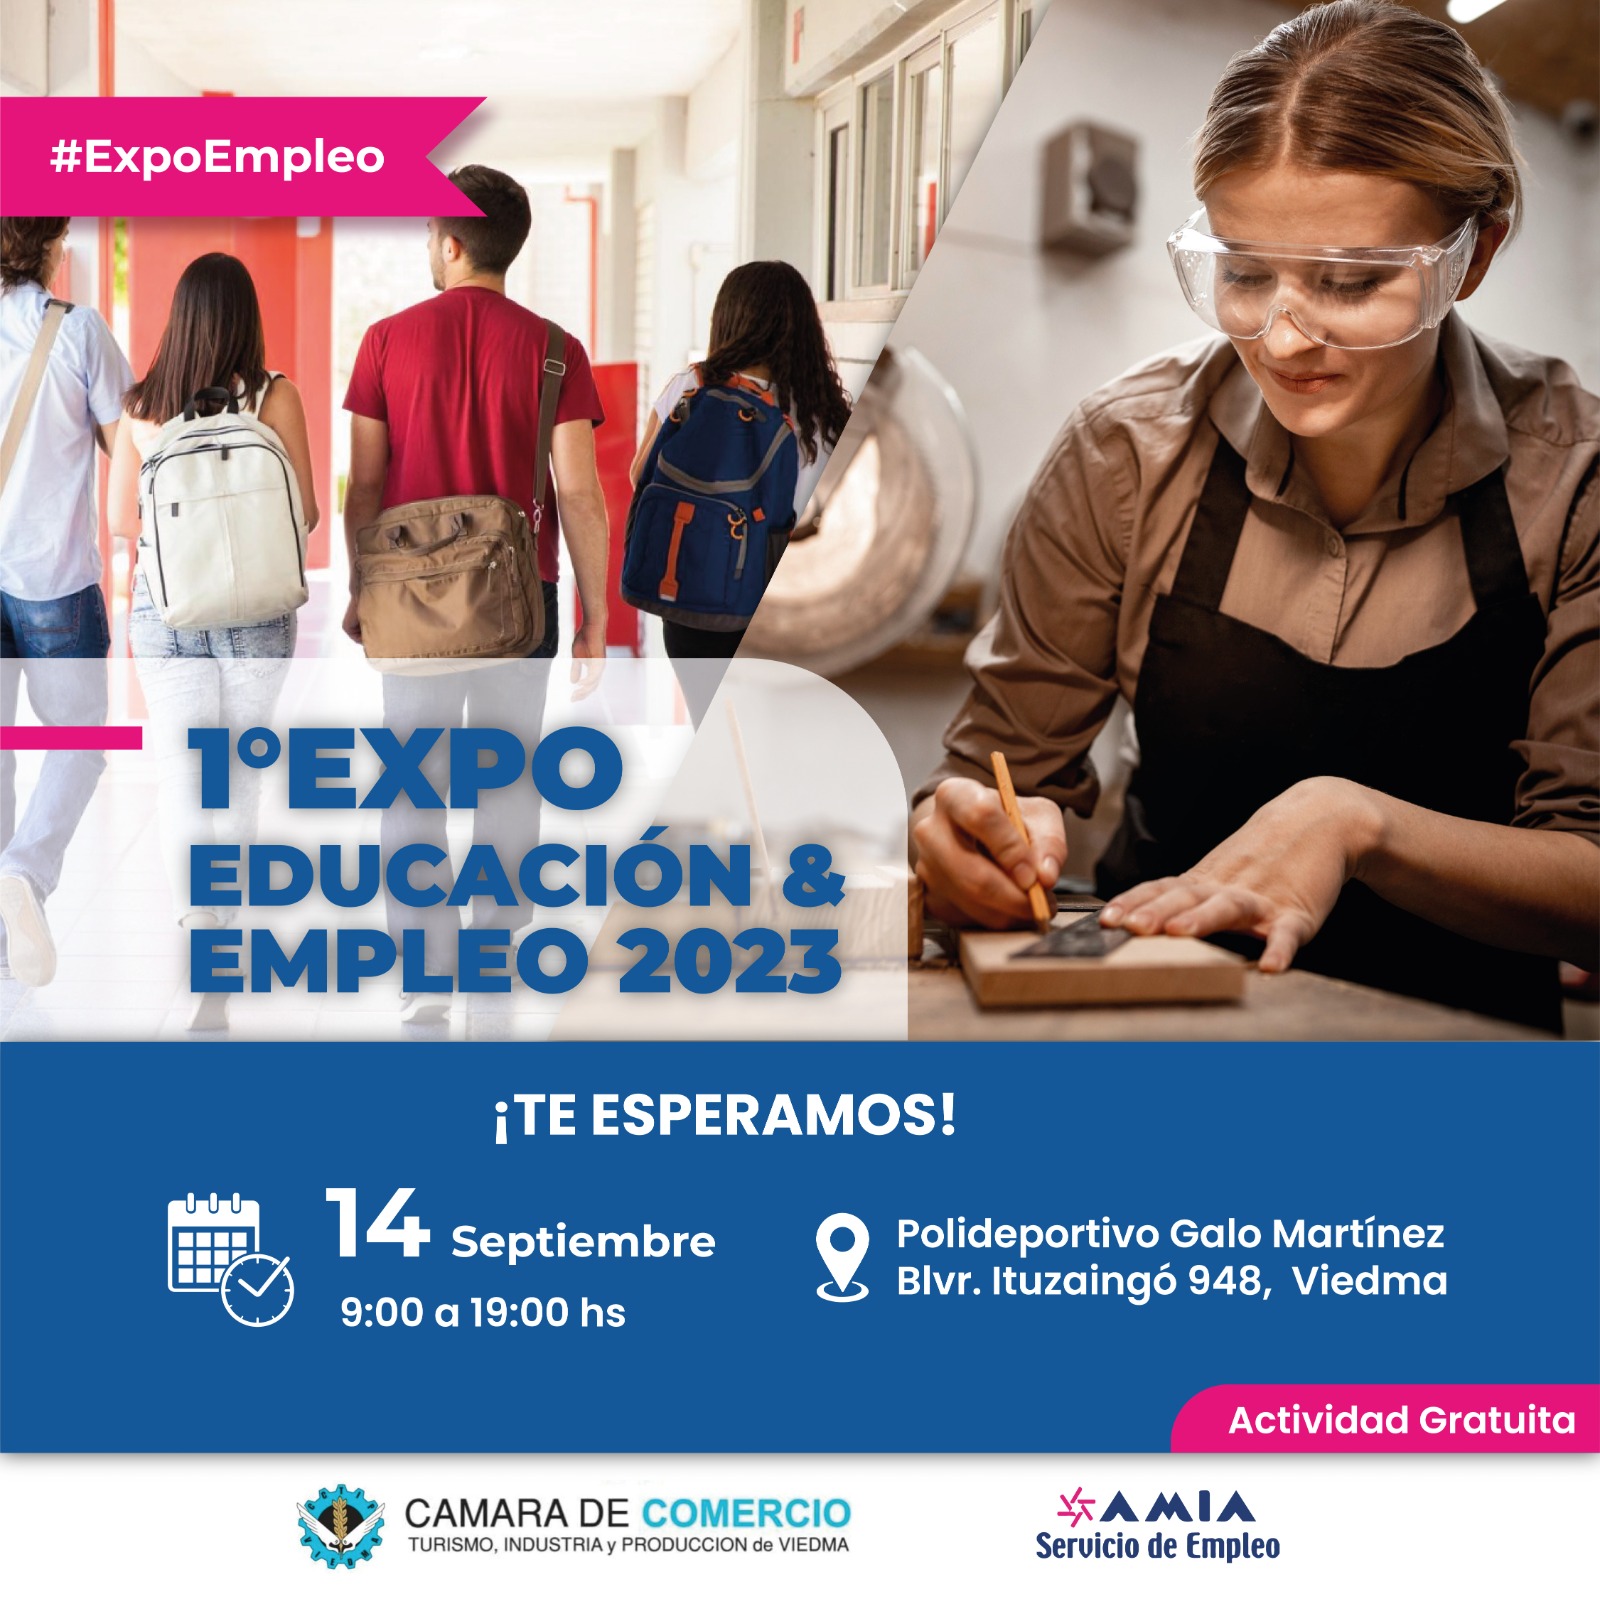 1° Expo Educación & Empleo